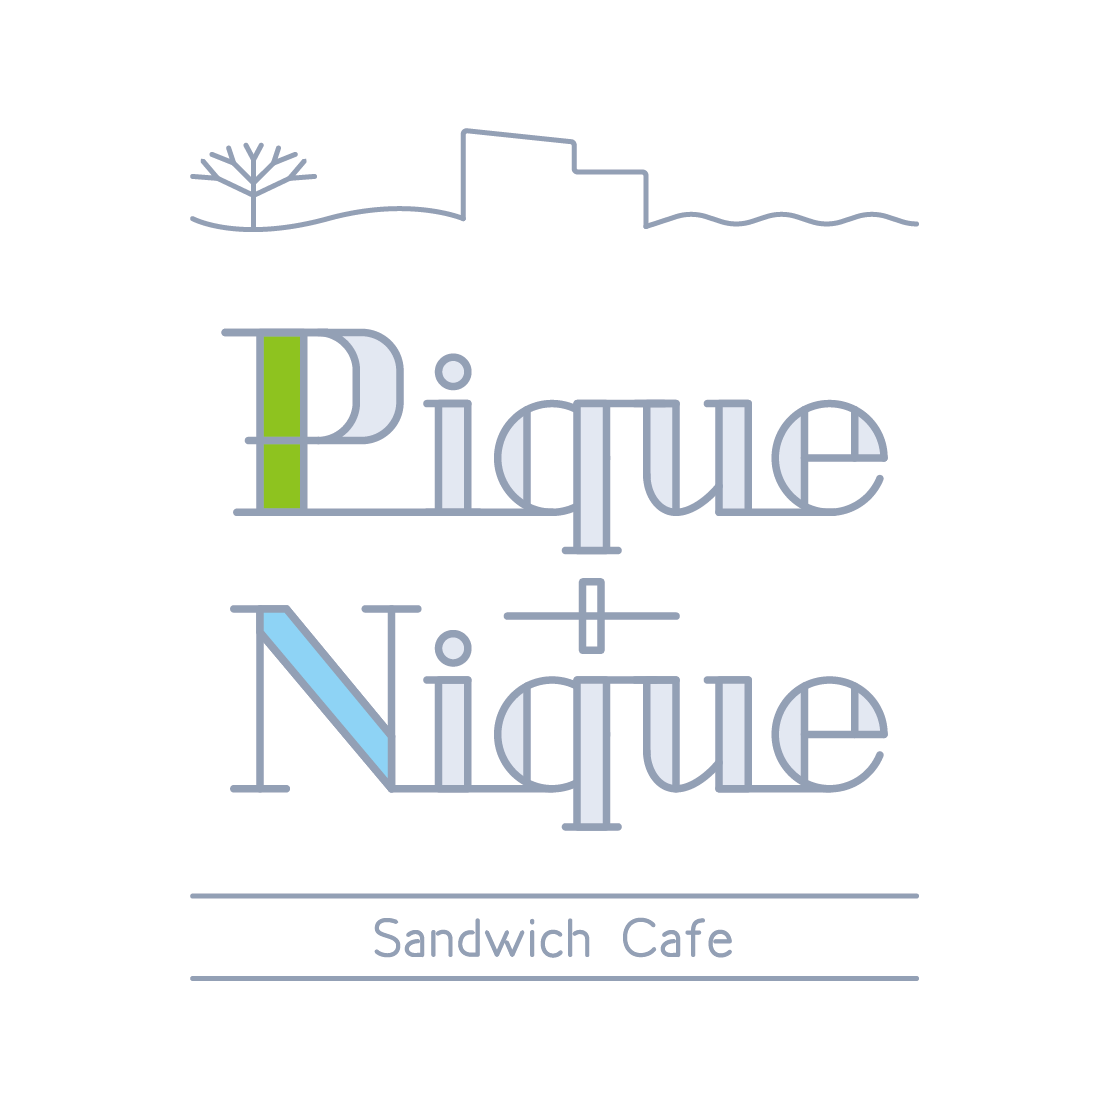 Park+ カフェ事業｜Pique+Nique